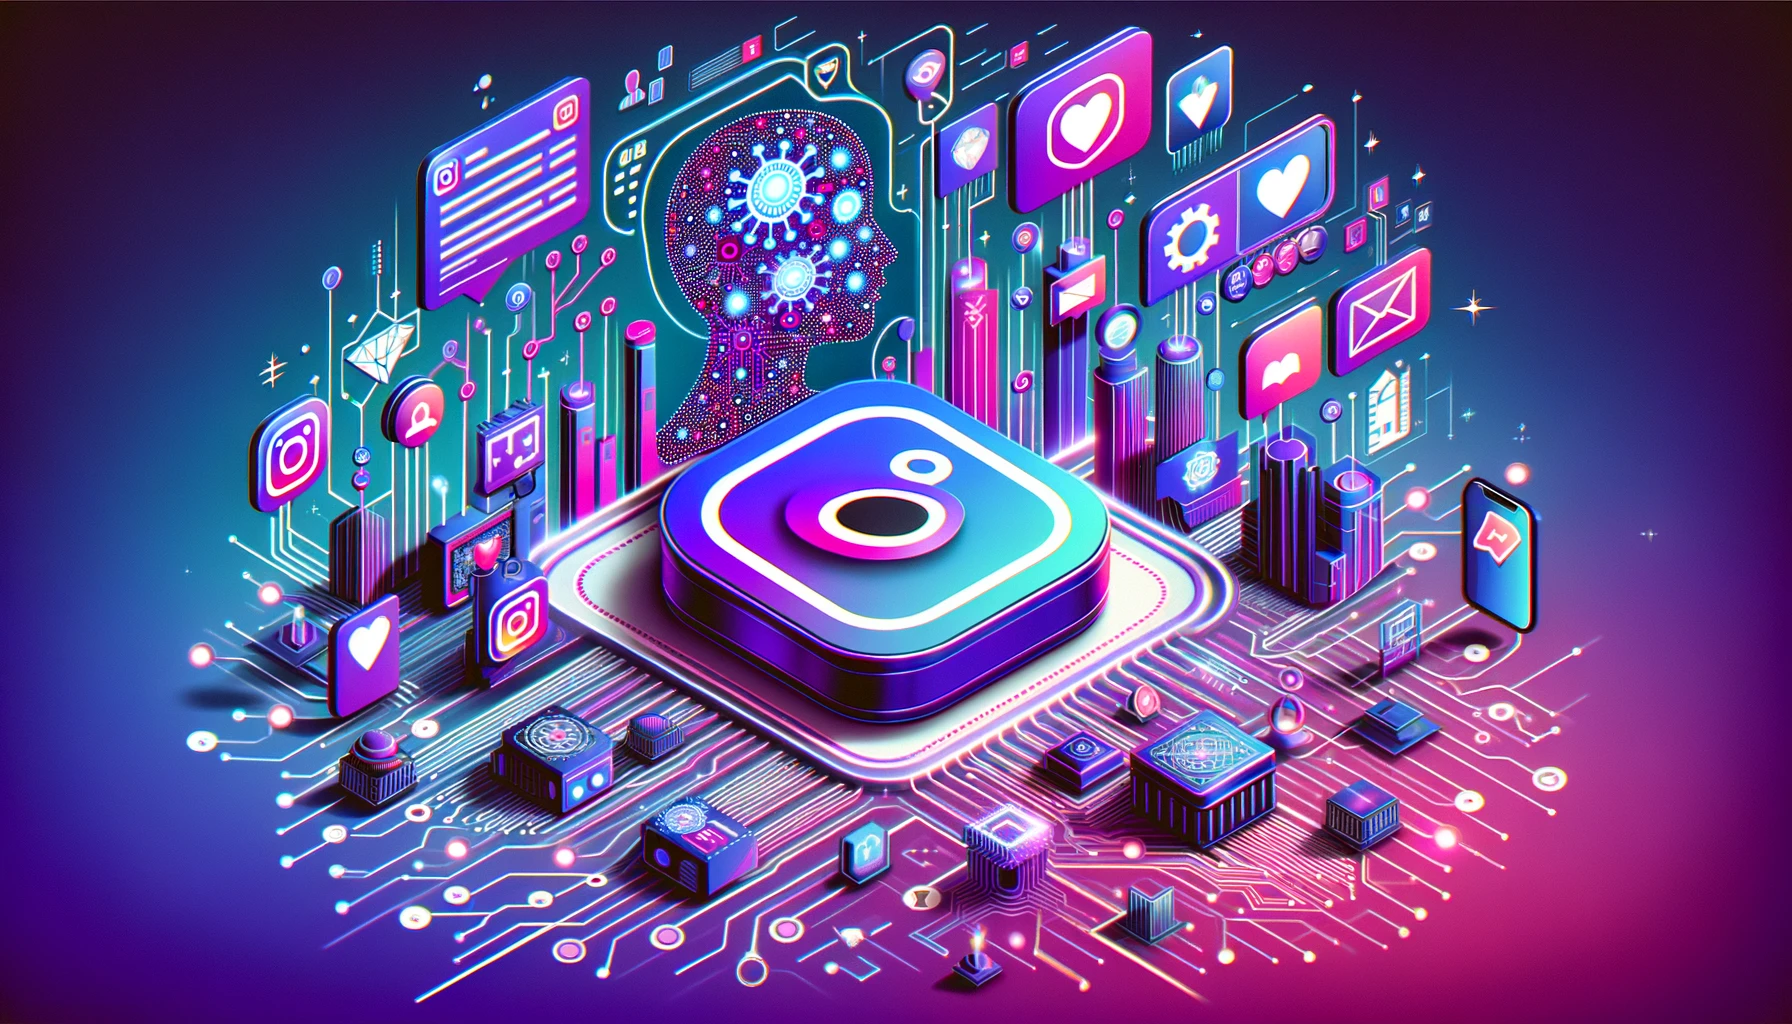 Instagram revoluciona la interacción de los influencers con su audiencia mediante bots de IA